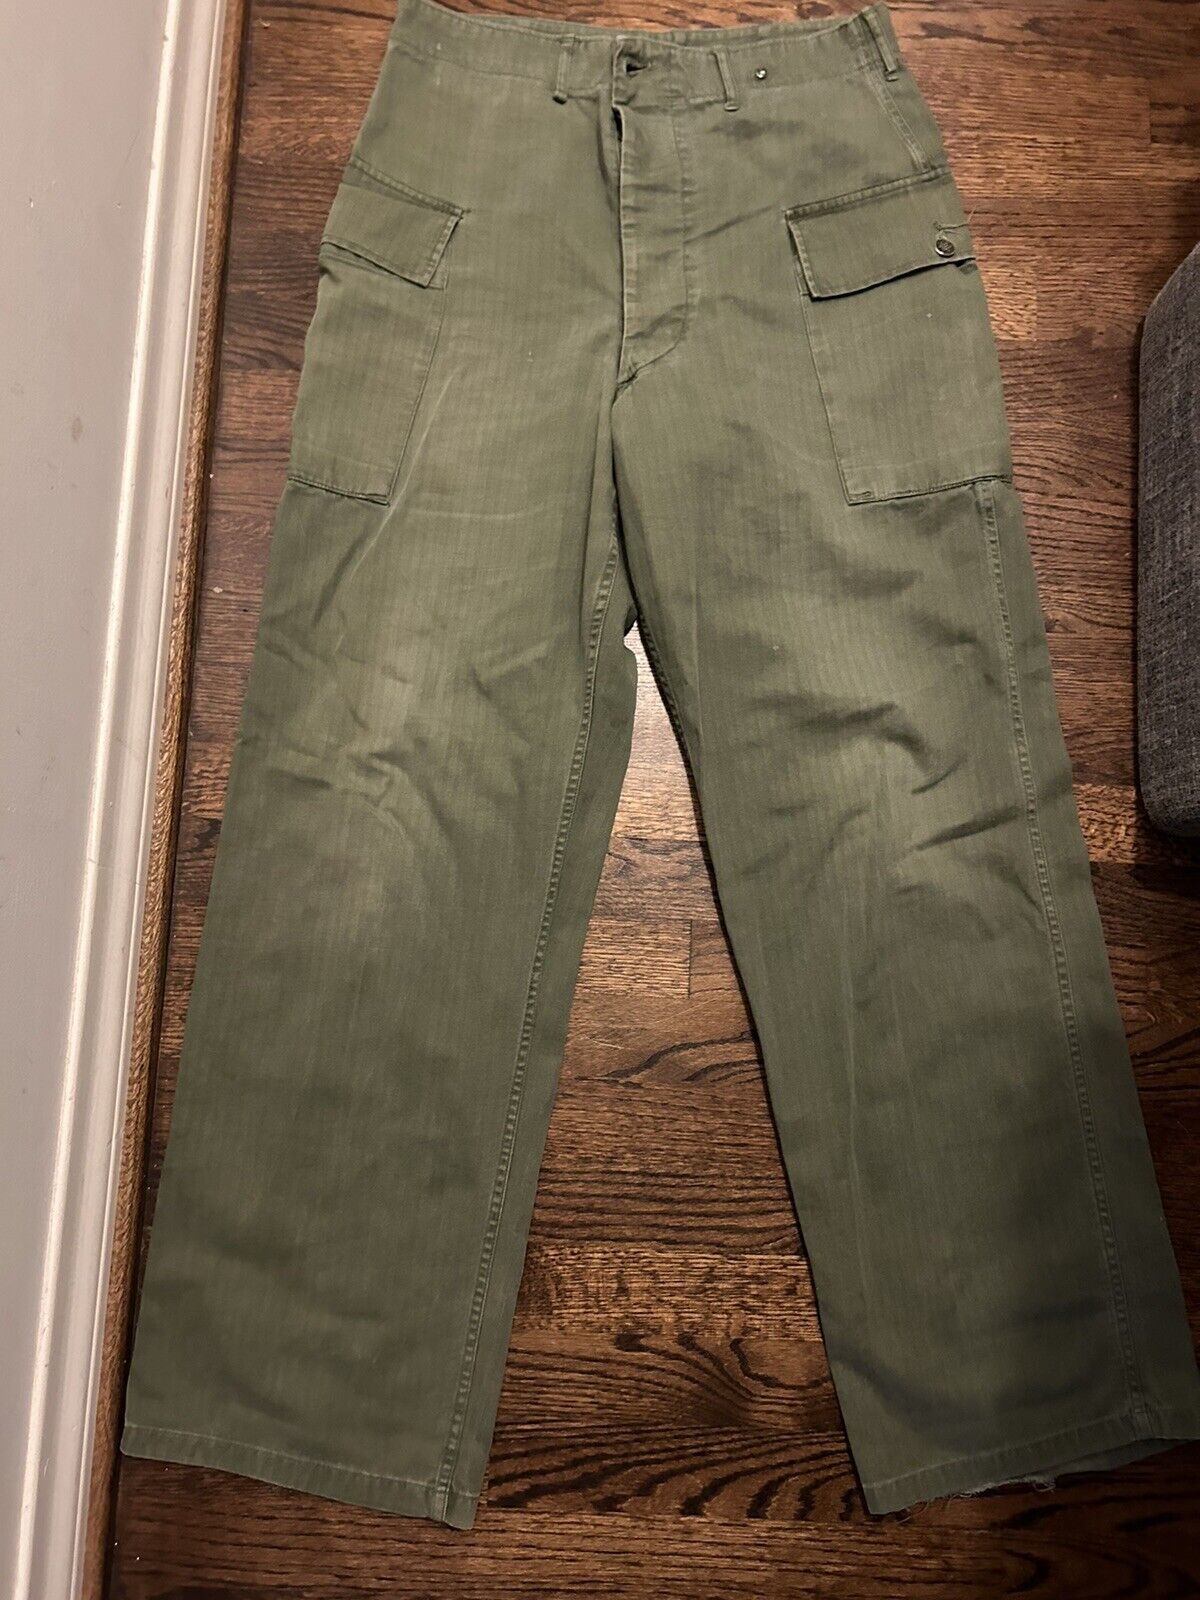 Men's VTG 1940s WWII HBT US Army pants size 34/32